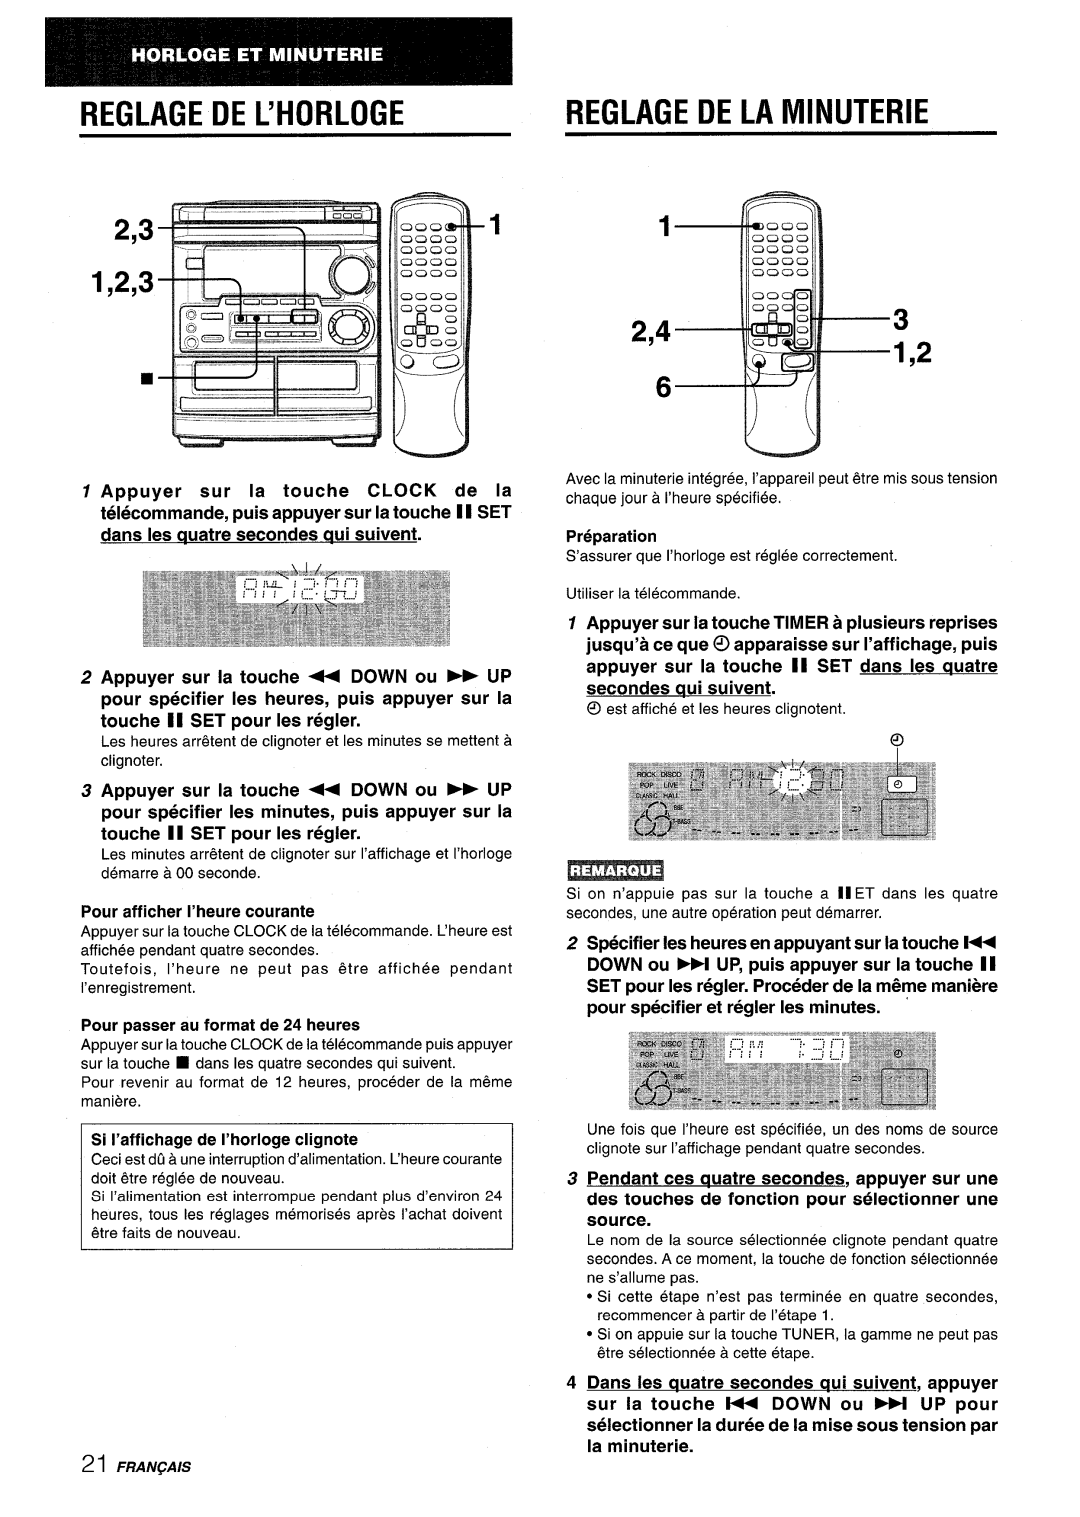 Aiwa CX-NMT50 manual Reglagedel’Horloge, 2,43 1,2, Reglage De La Minuterie, Pour afficher I’heure courante, Preparation 